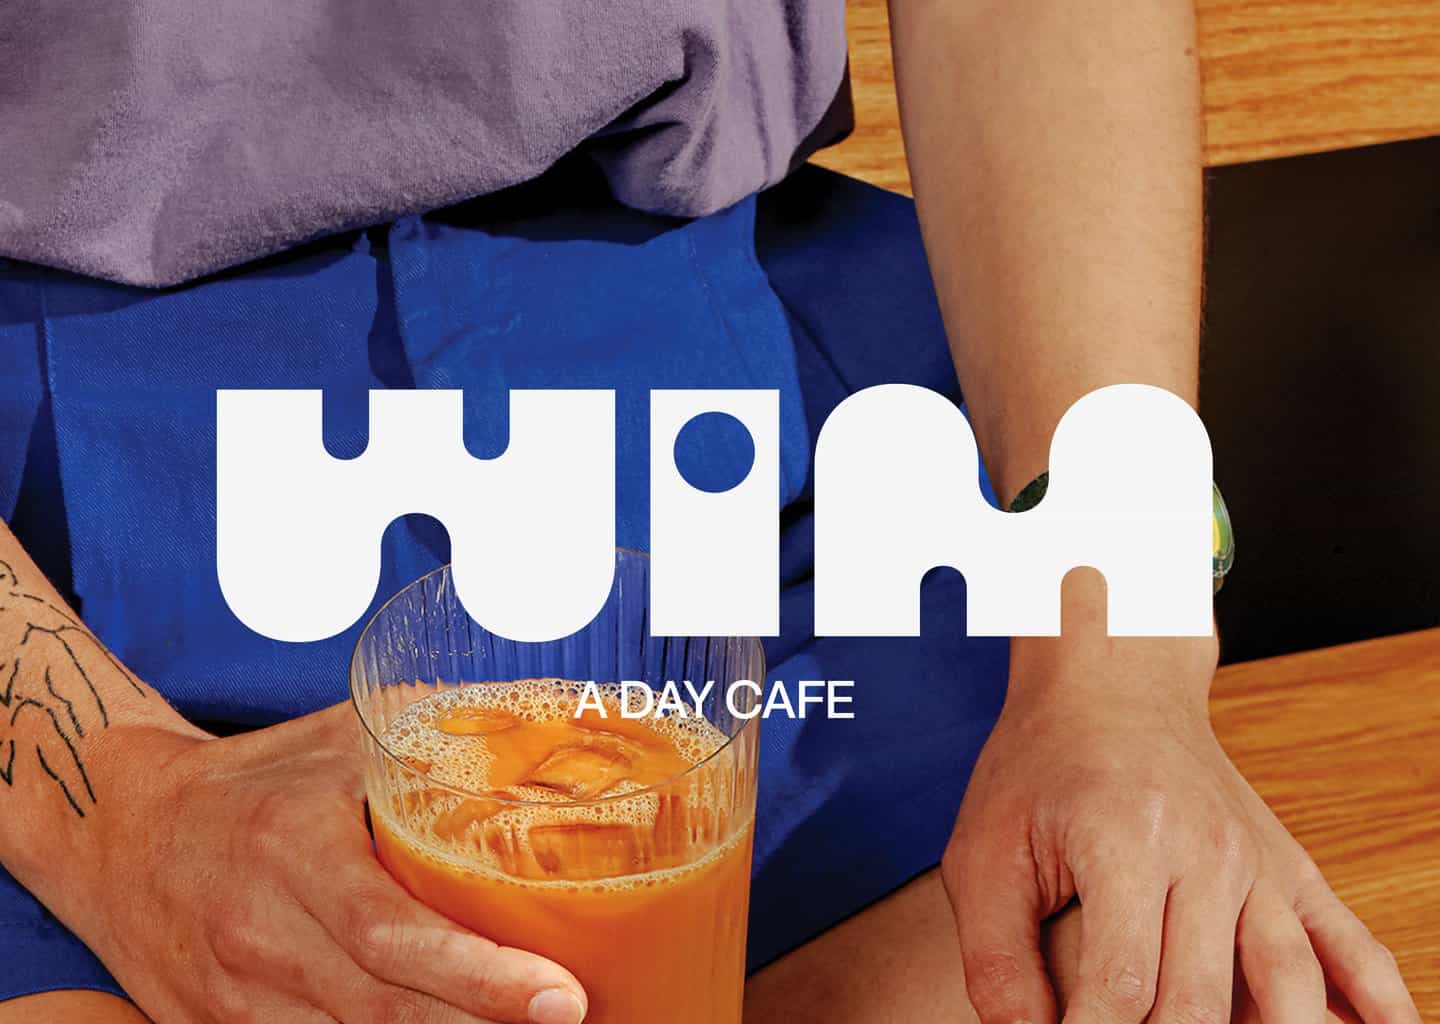 La identidad de Hanna Karraby y James Paris para Wim es una versión tipográfica refrescante de la marca de cafetería